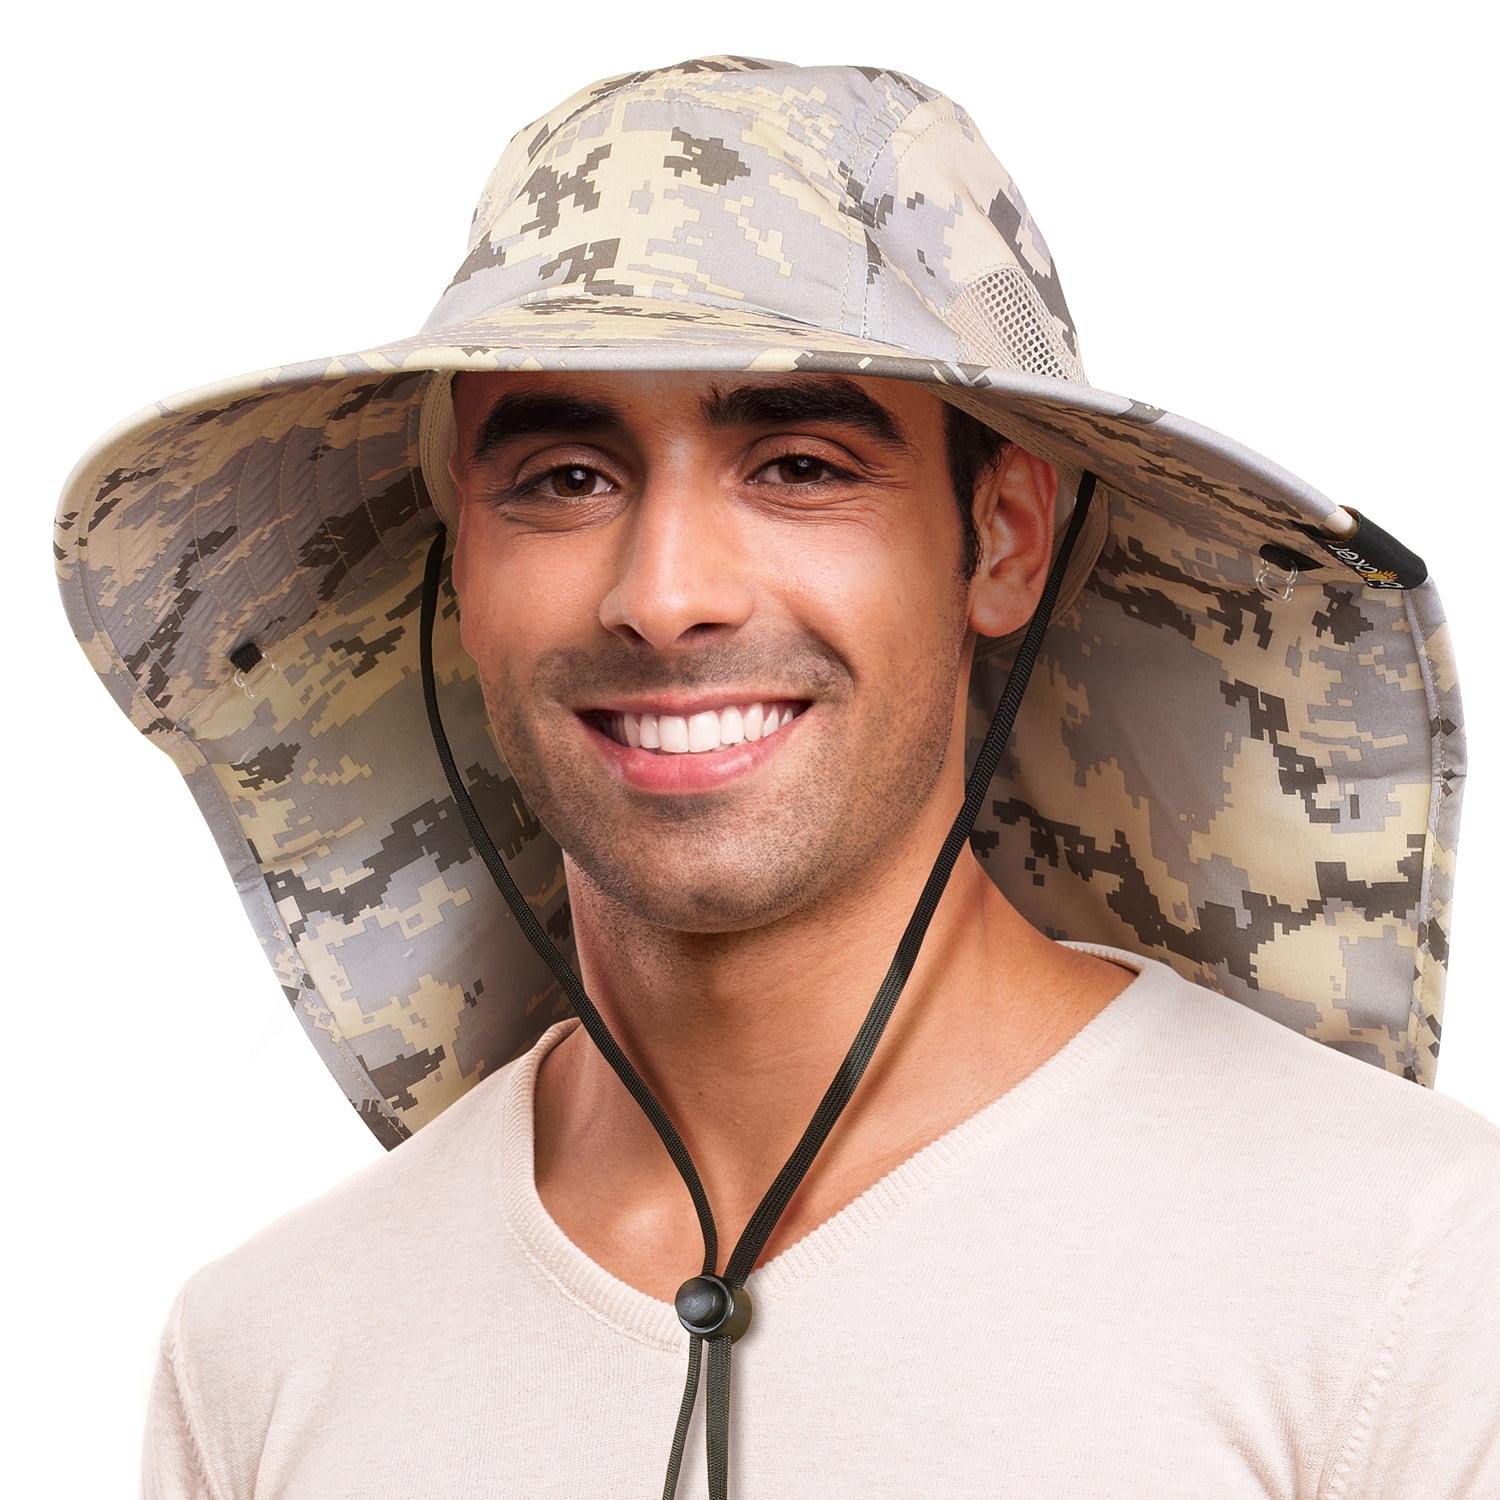 Solana Wide Brimmed Sun Hat for Men